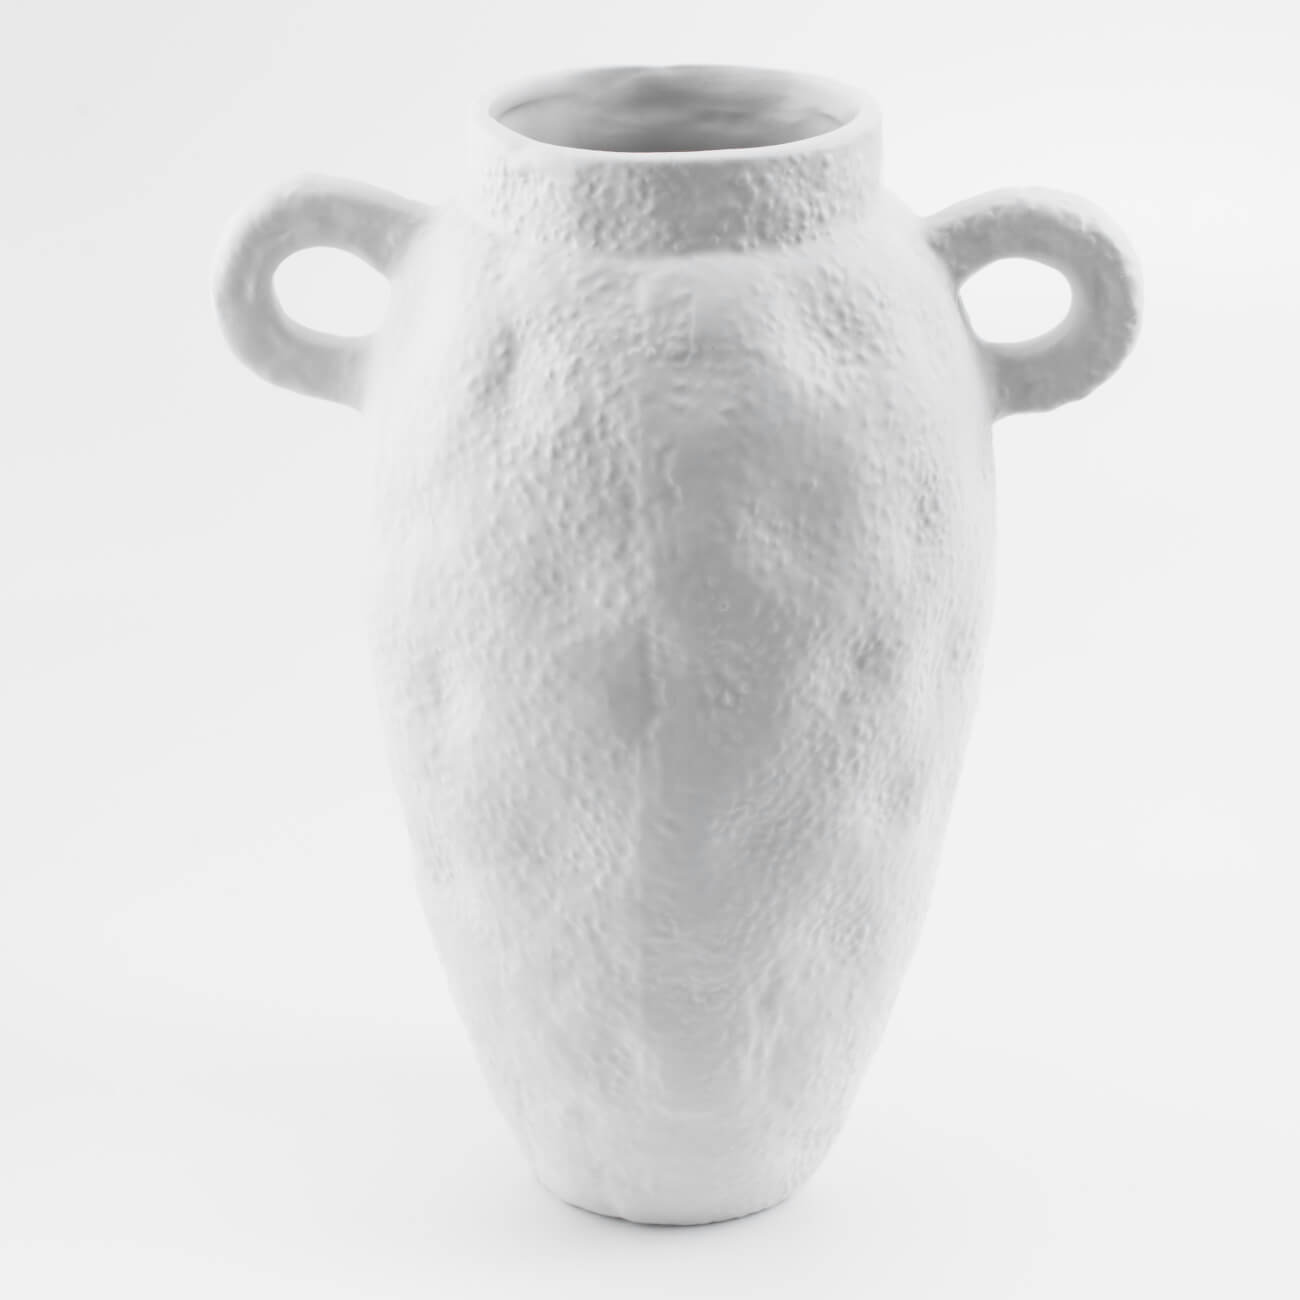 Ваза для цветов, 25 см, декоративная, с ручками, керамика, молочная, Minimalism kuchenland ваза для ов 26 см декоративная керамика белая лицо face